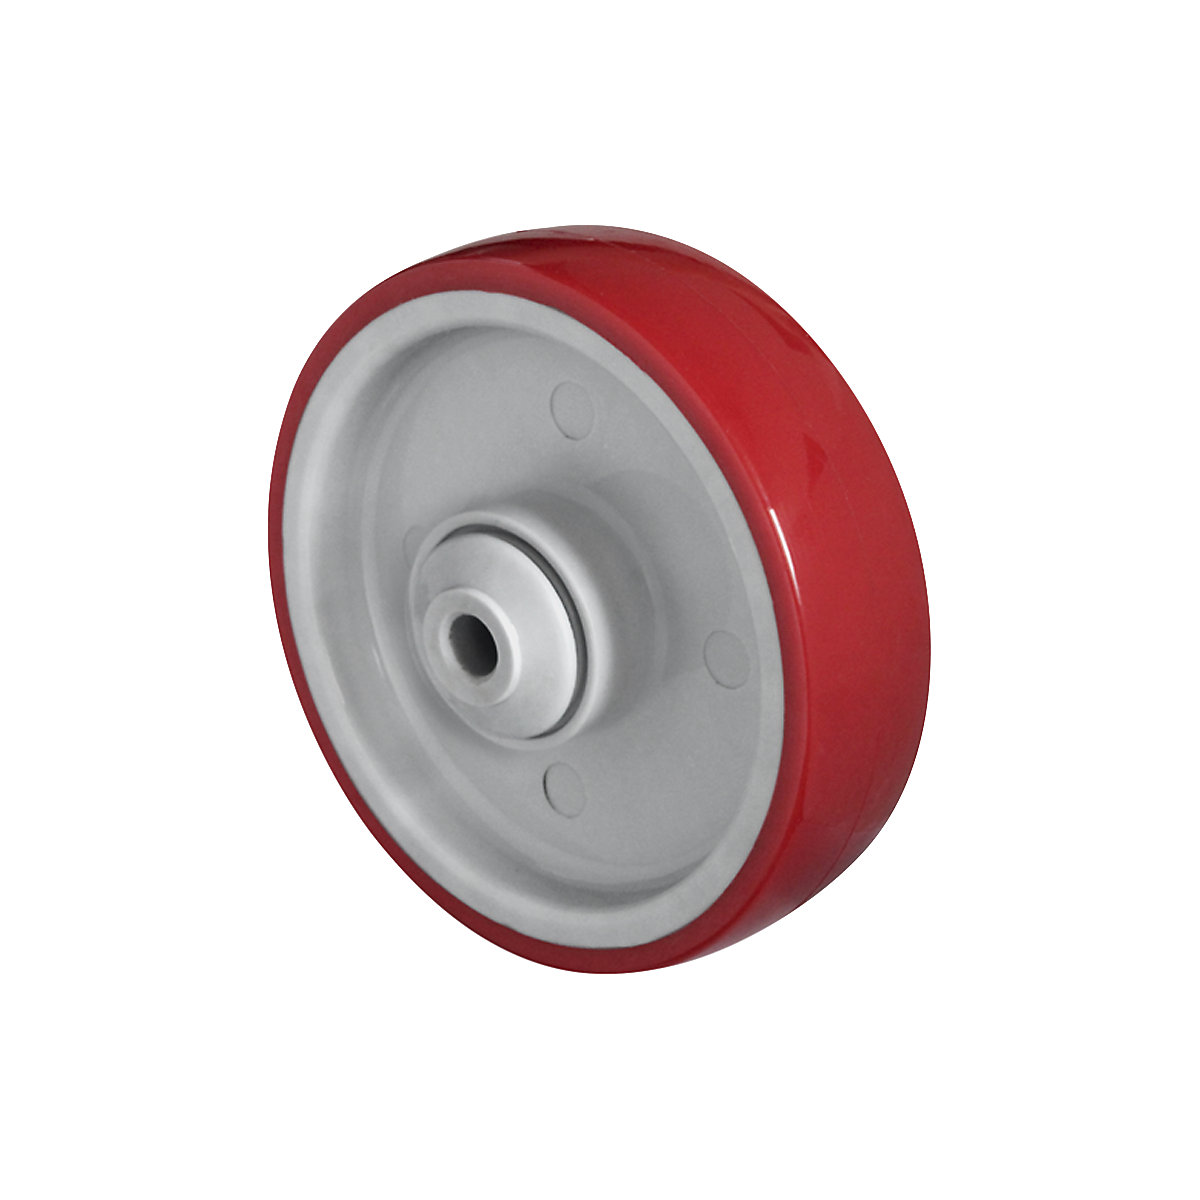 Roue en PU rouge sur jante en polyamide, roulement à billes, à partir de 2 pièces, Ø x largeur roue 100 x 32 mm-2